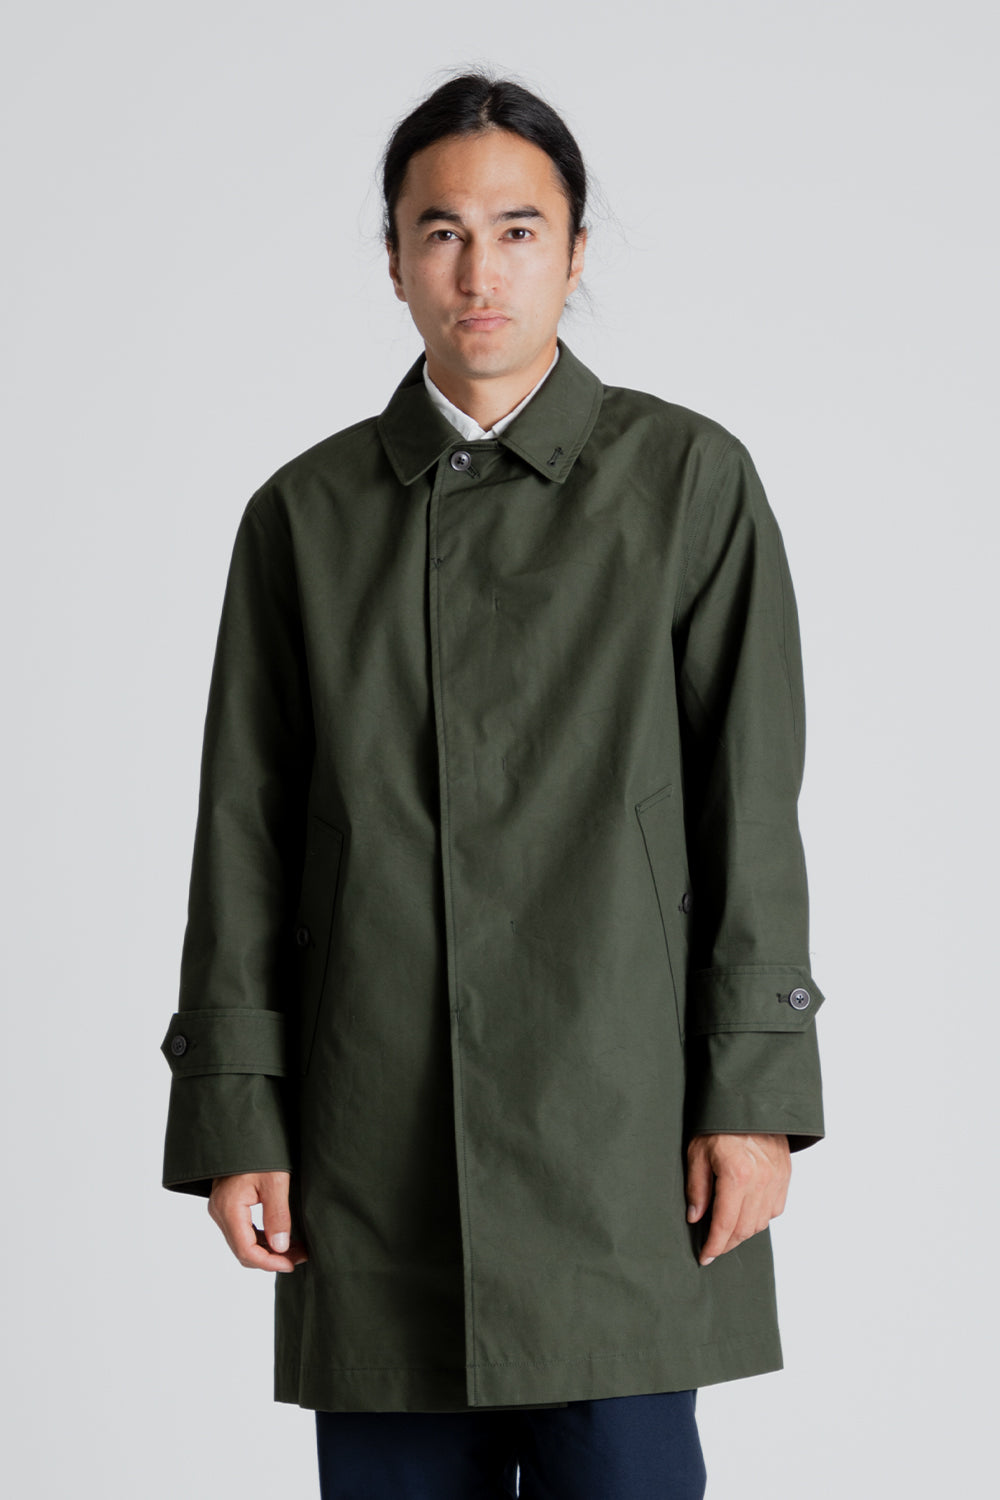 Nanamica GORE-TEX Soutien Collar Coat in Moss Green